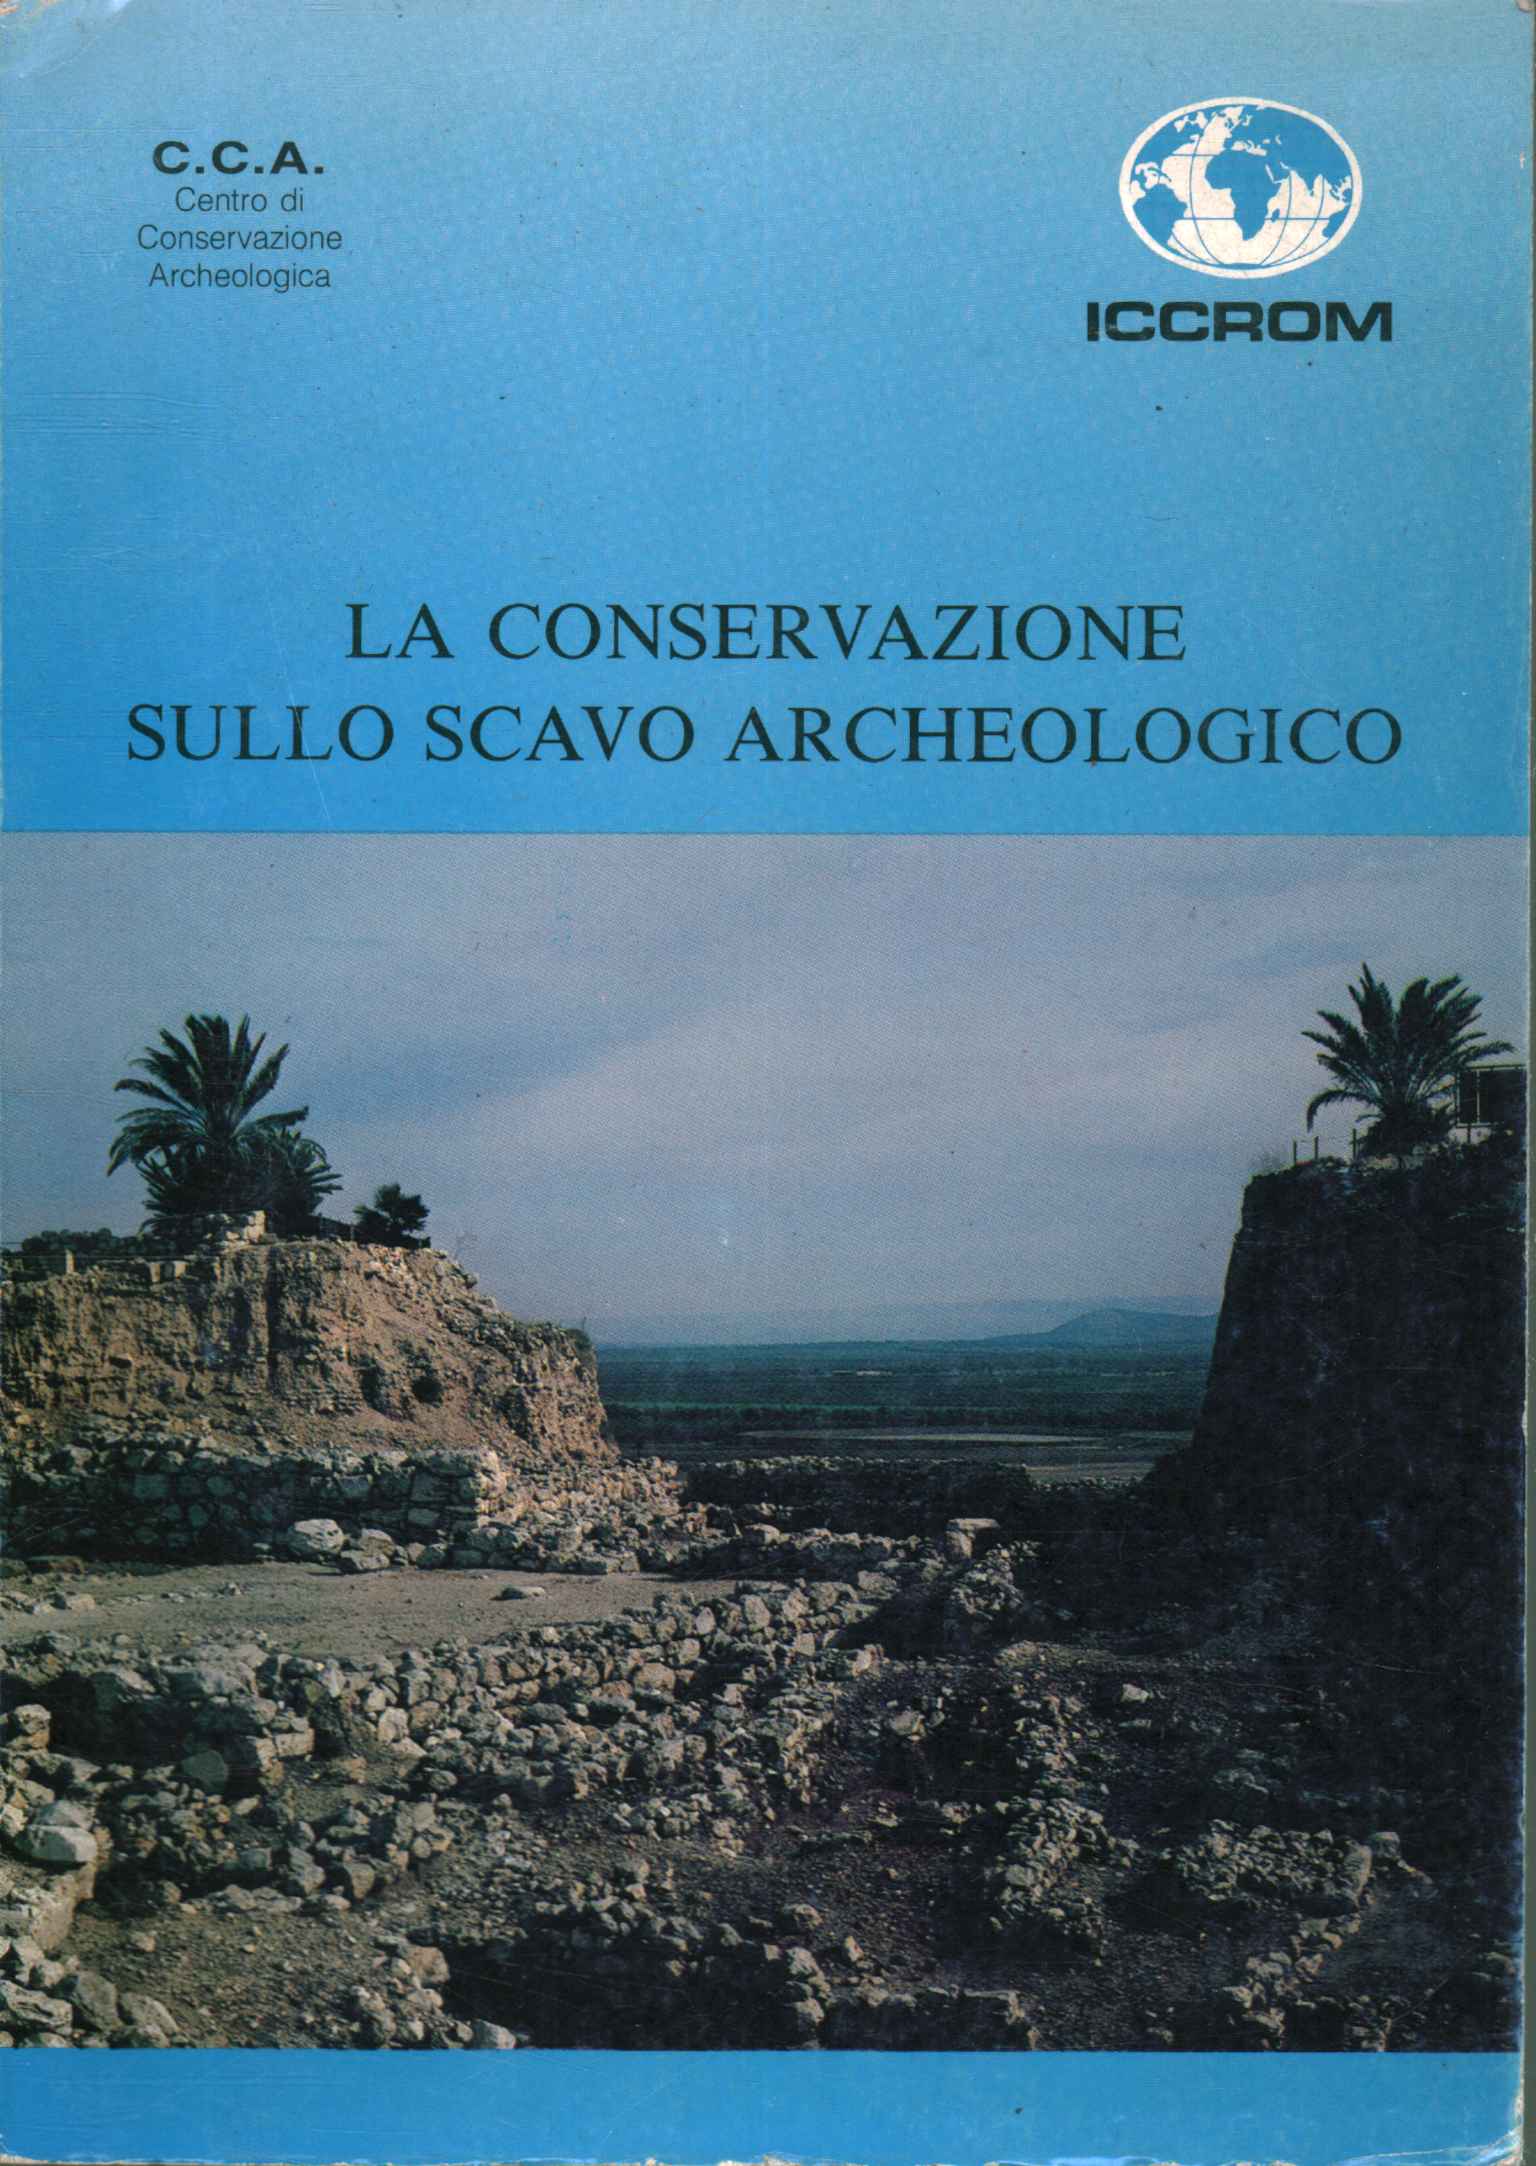 Conservation sur fouilles archéologiques